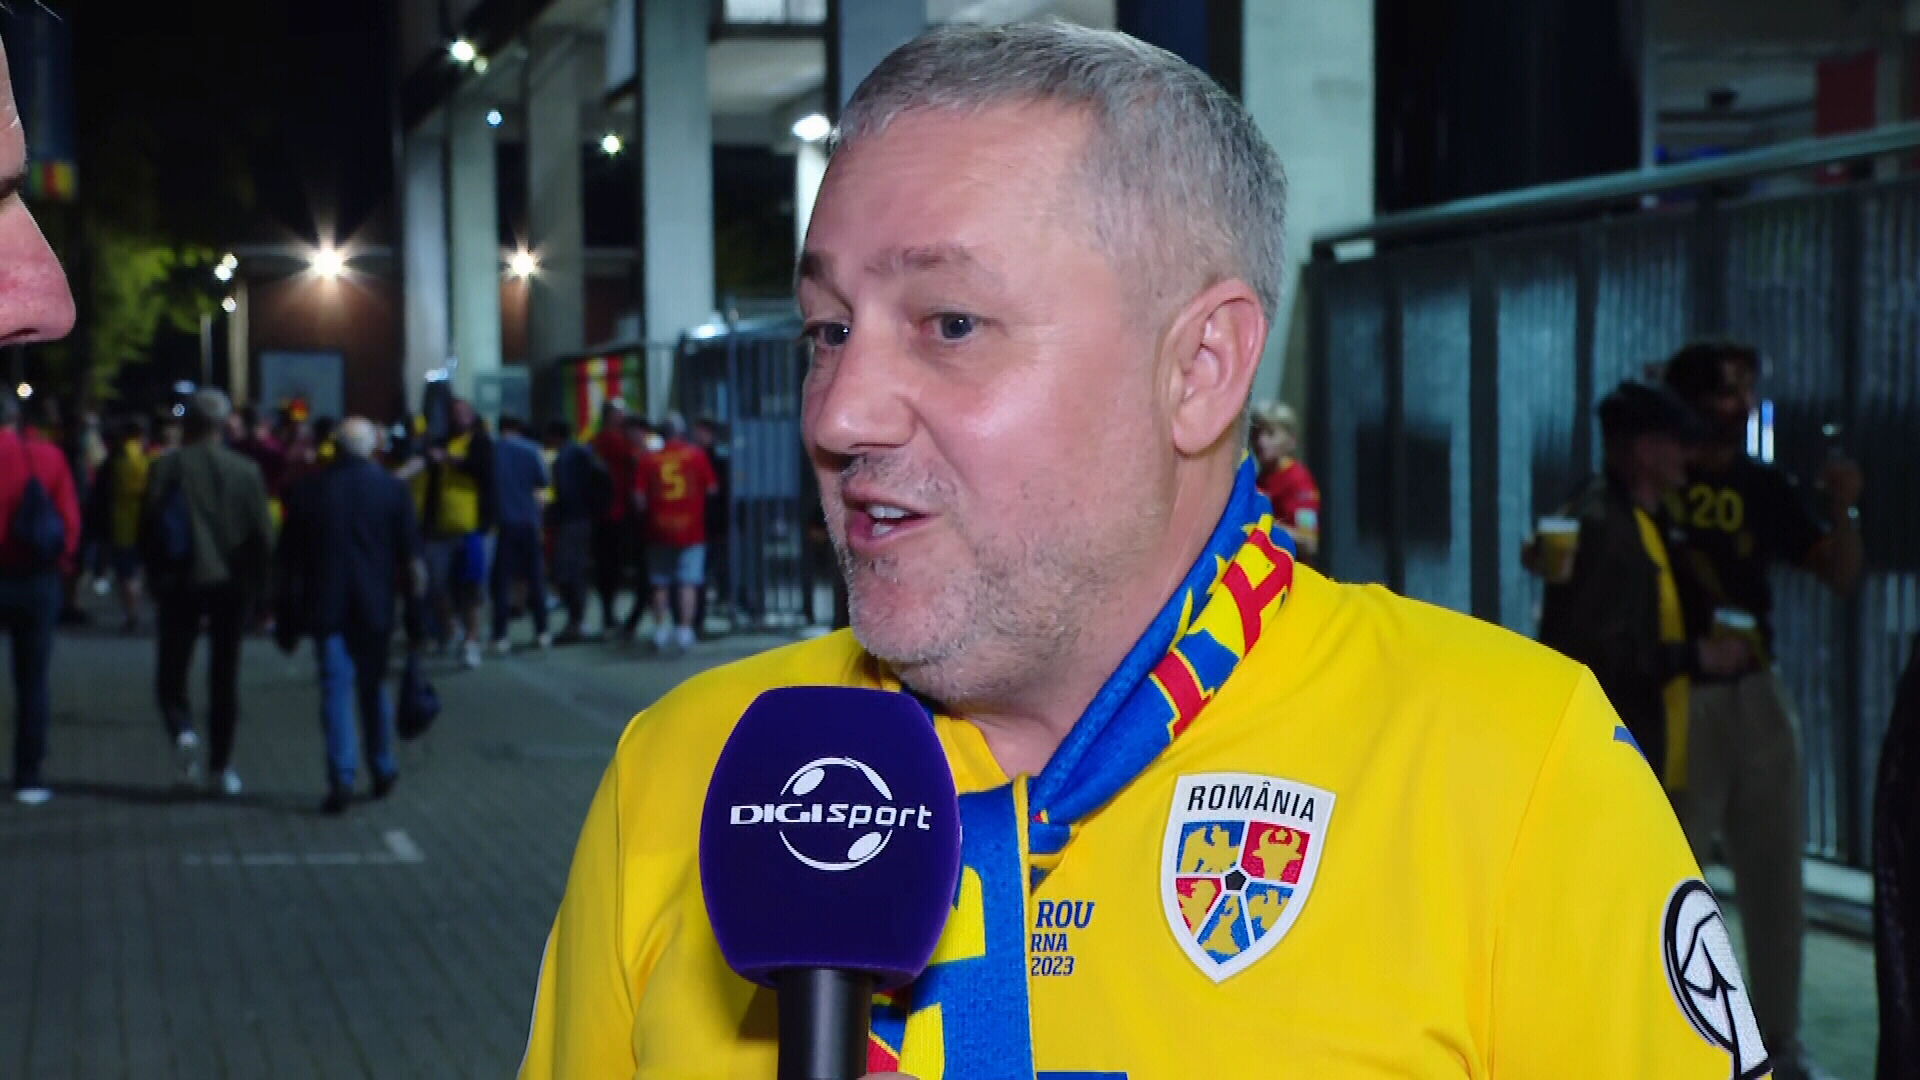 ”E cel mai bun jucător din România”. Mihai Rotaru nu are dubii: ”Are experiența meciurilor internaționale”